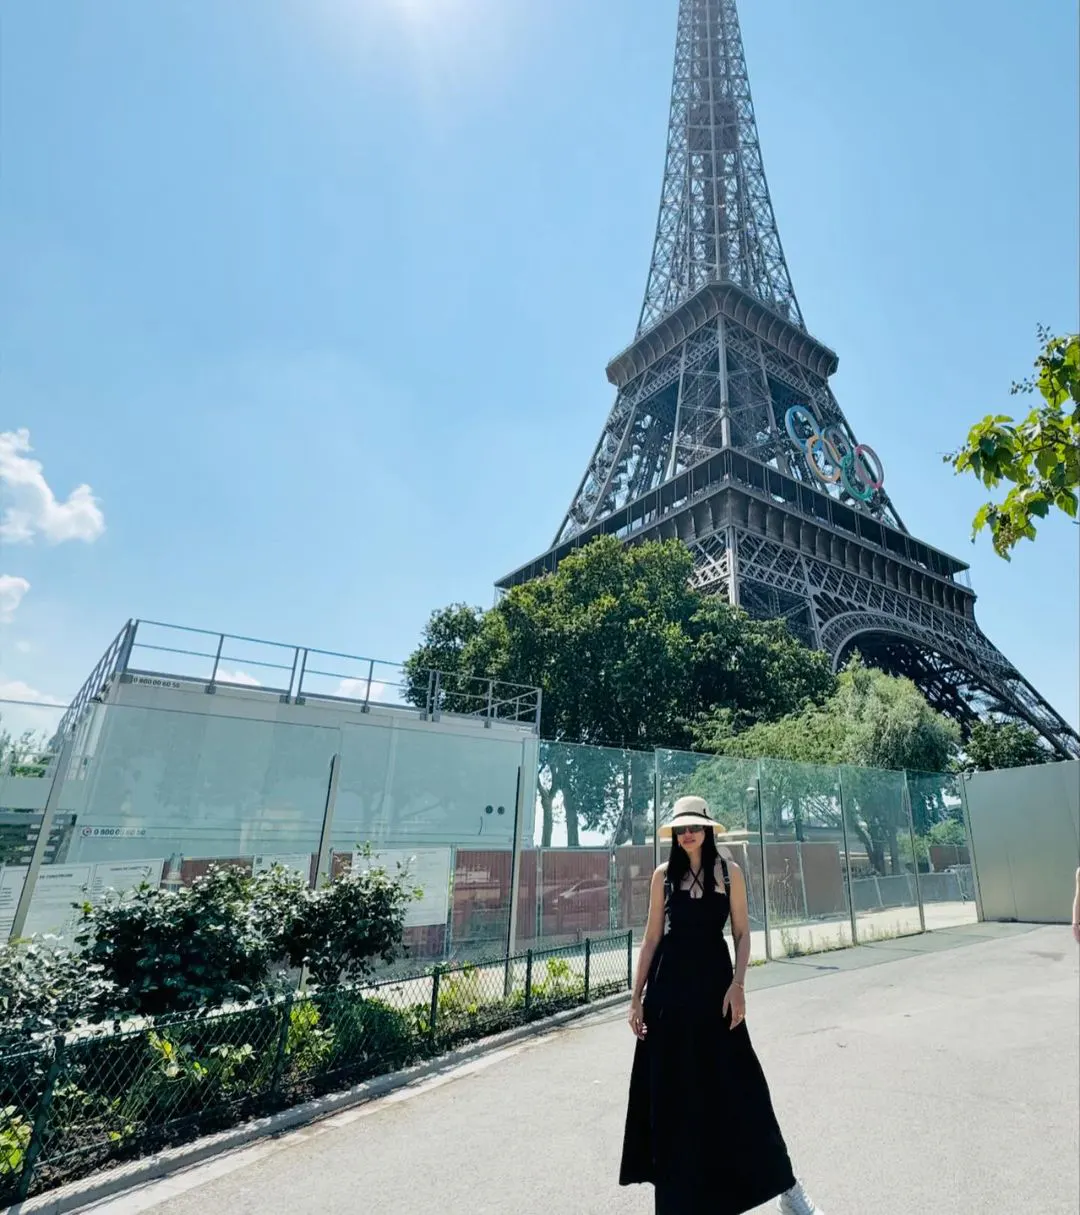 Mirnalini Ravi Enjoying Vacation in Paris